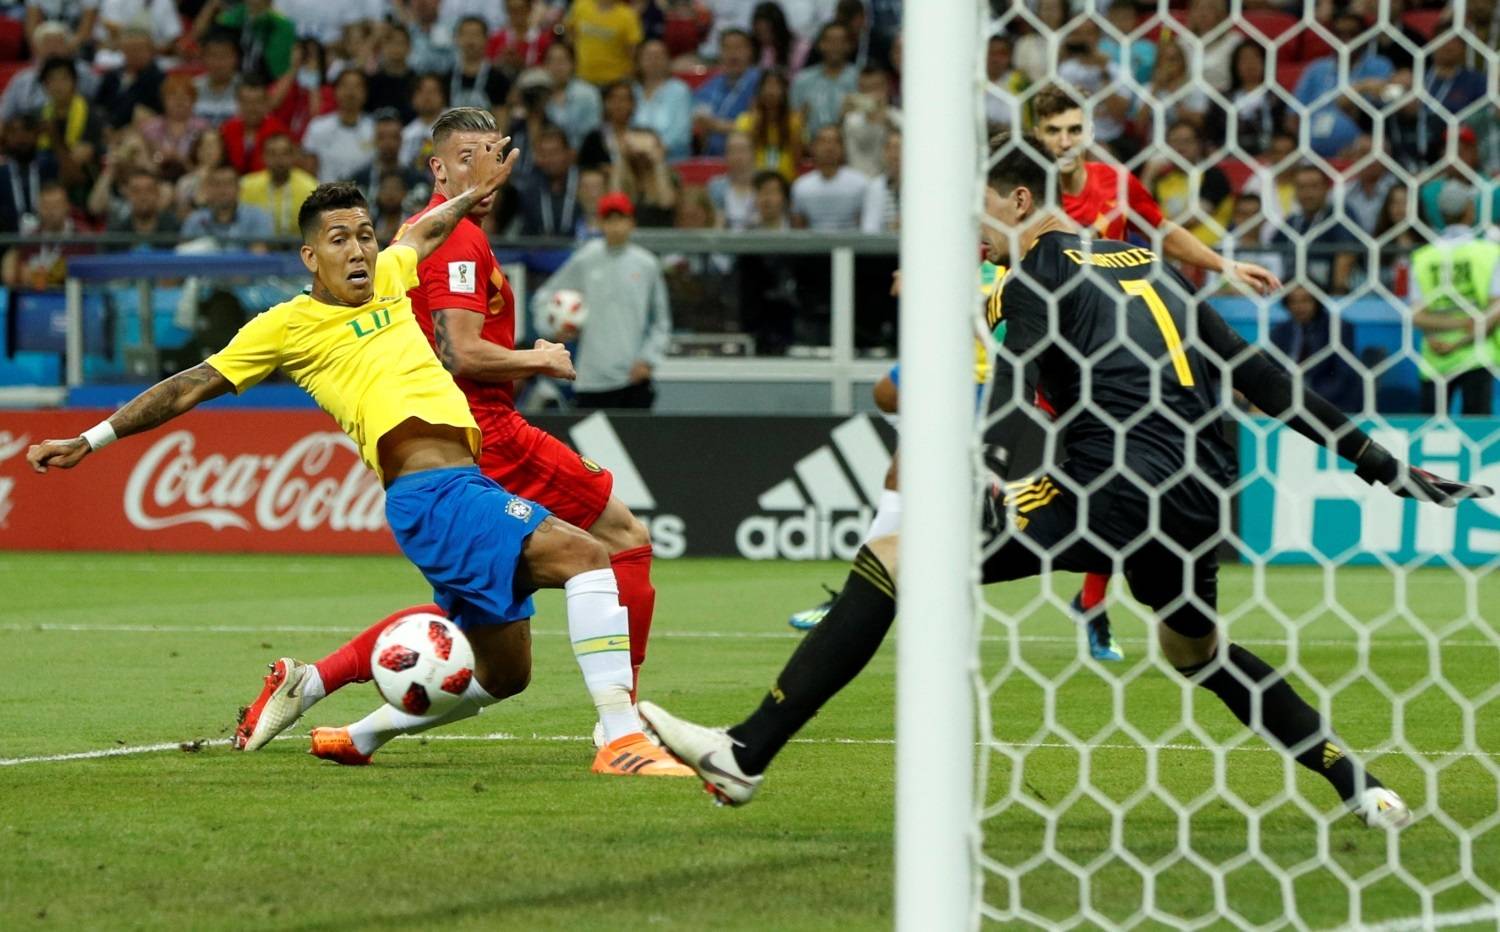 Travado, Brasil perde da Bélgica e é eliminado da Copa do Mundo da Rússia -  06/07/2018 - Esporte - Folha